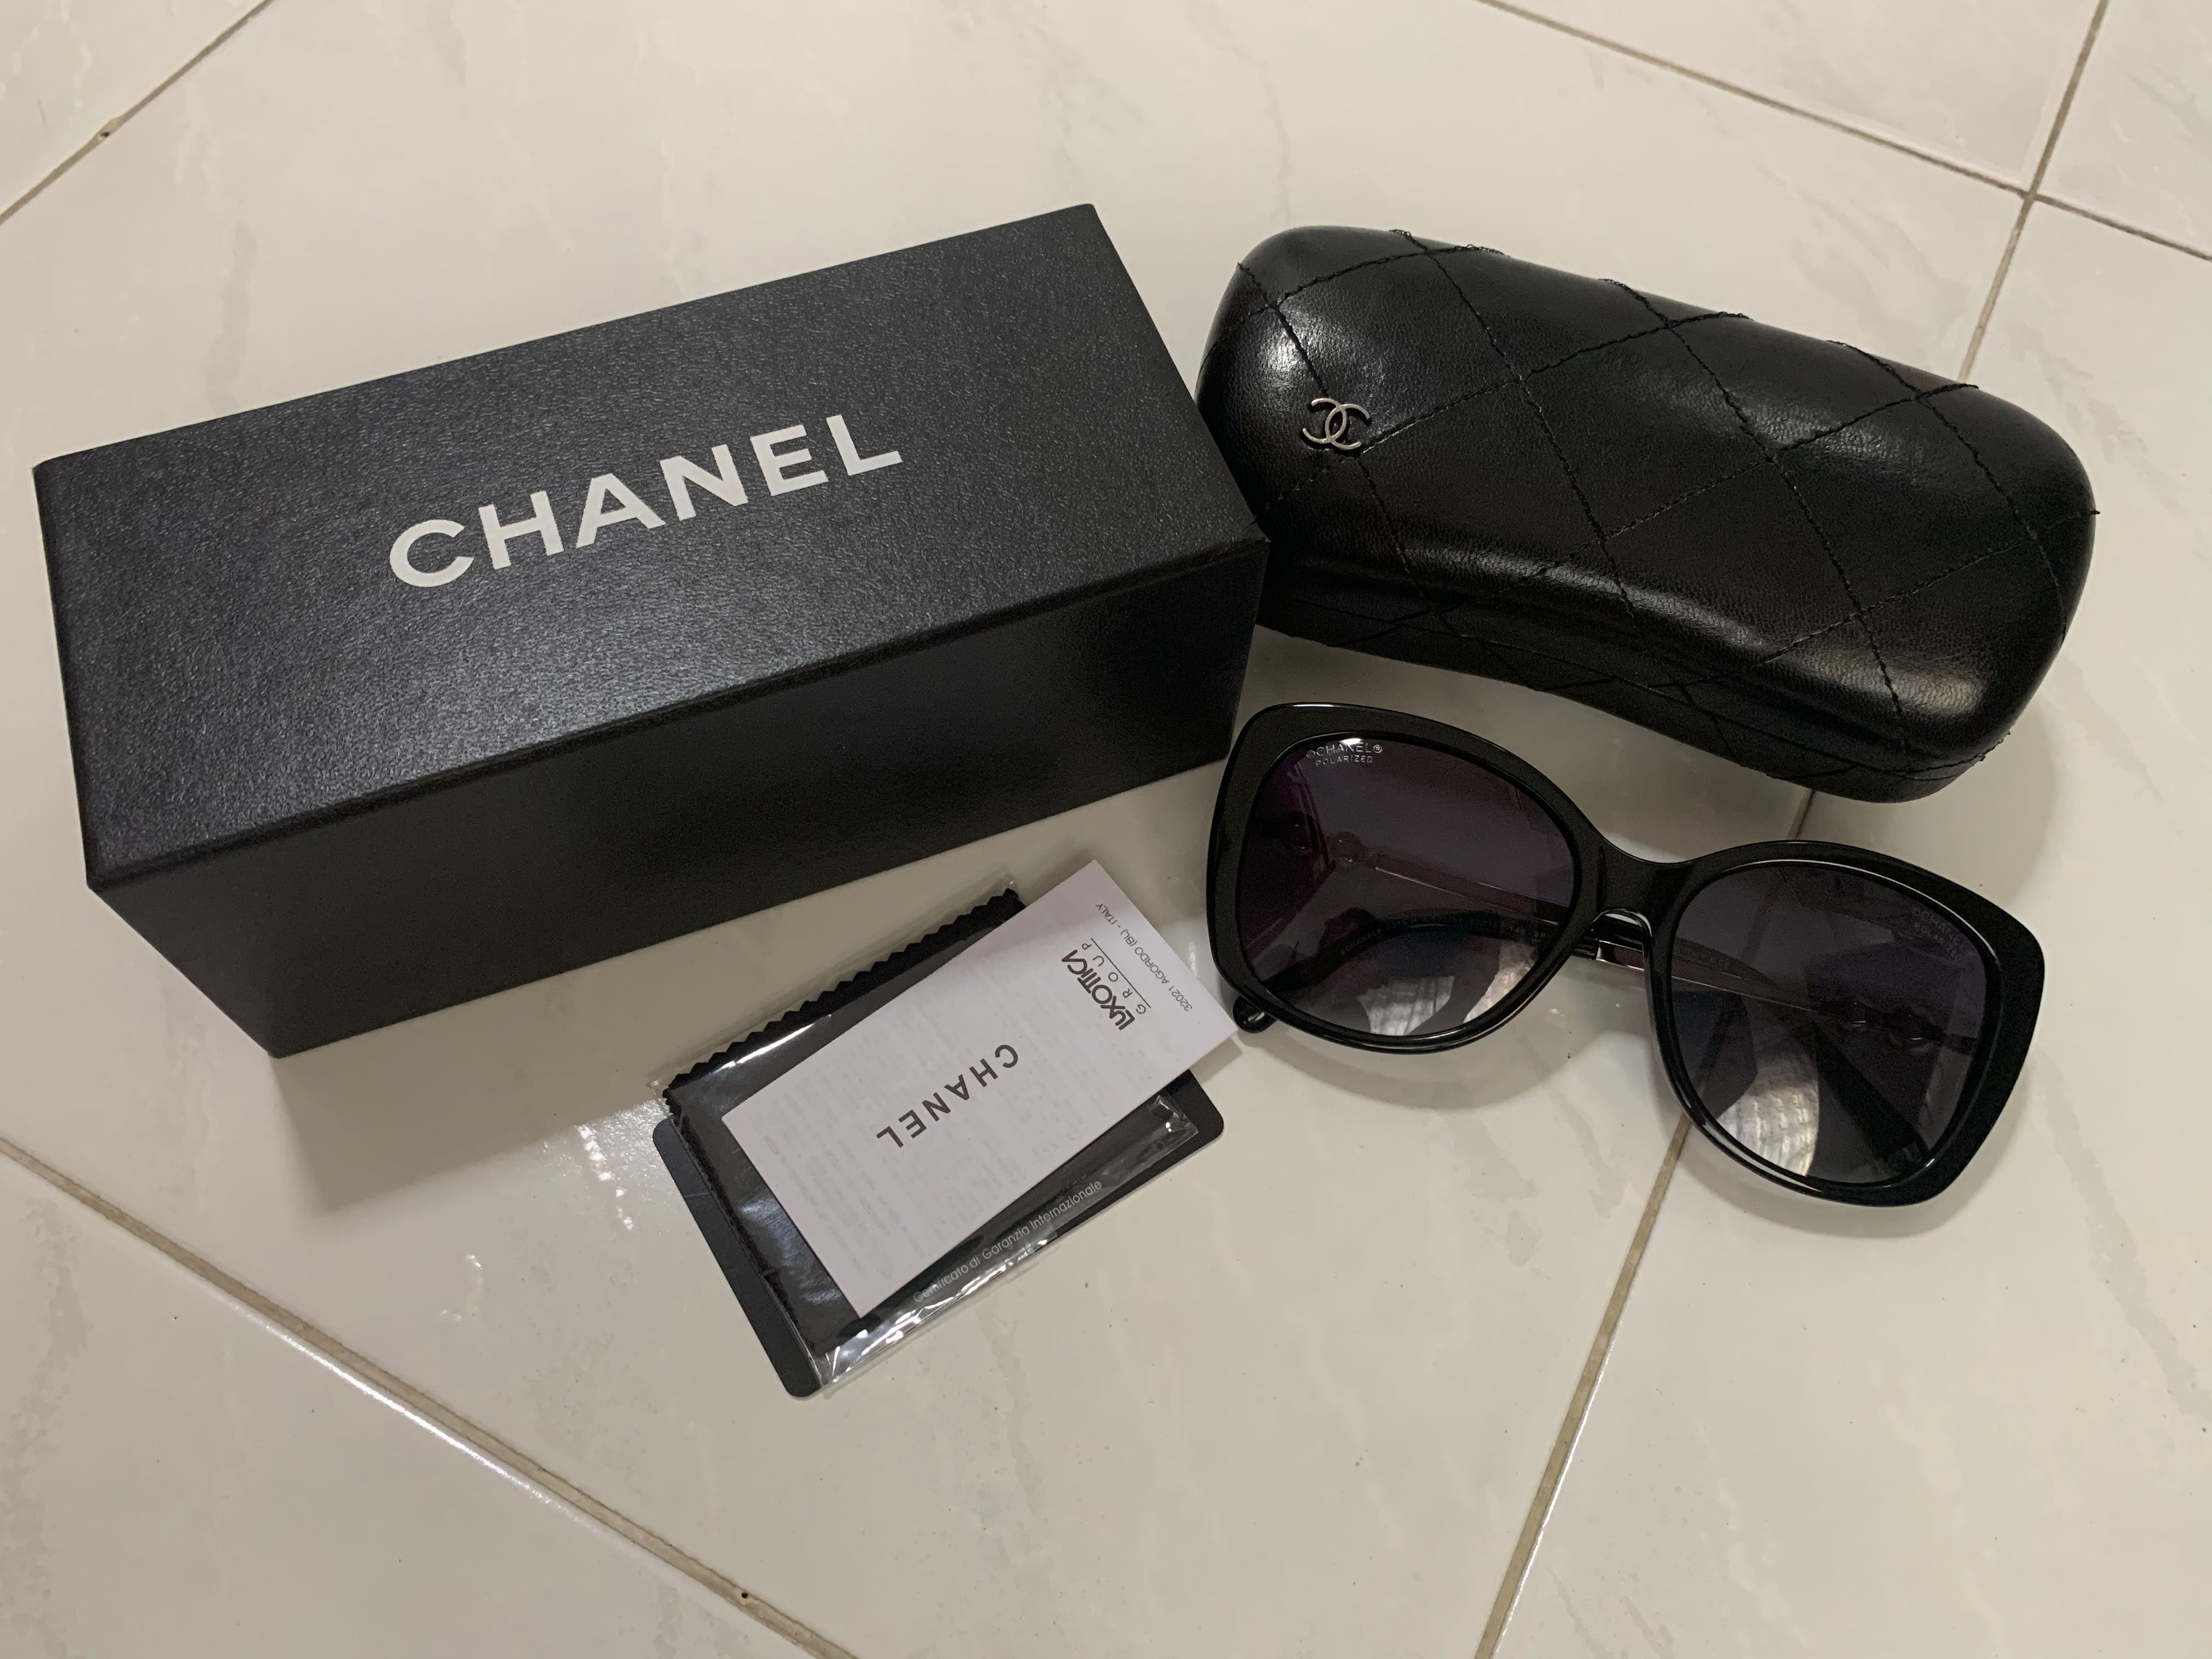 Chanel - Butterfly Sunglasses - Dark Blue Gray - Chanel Eyewear